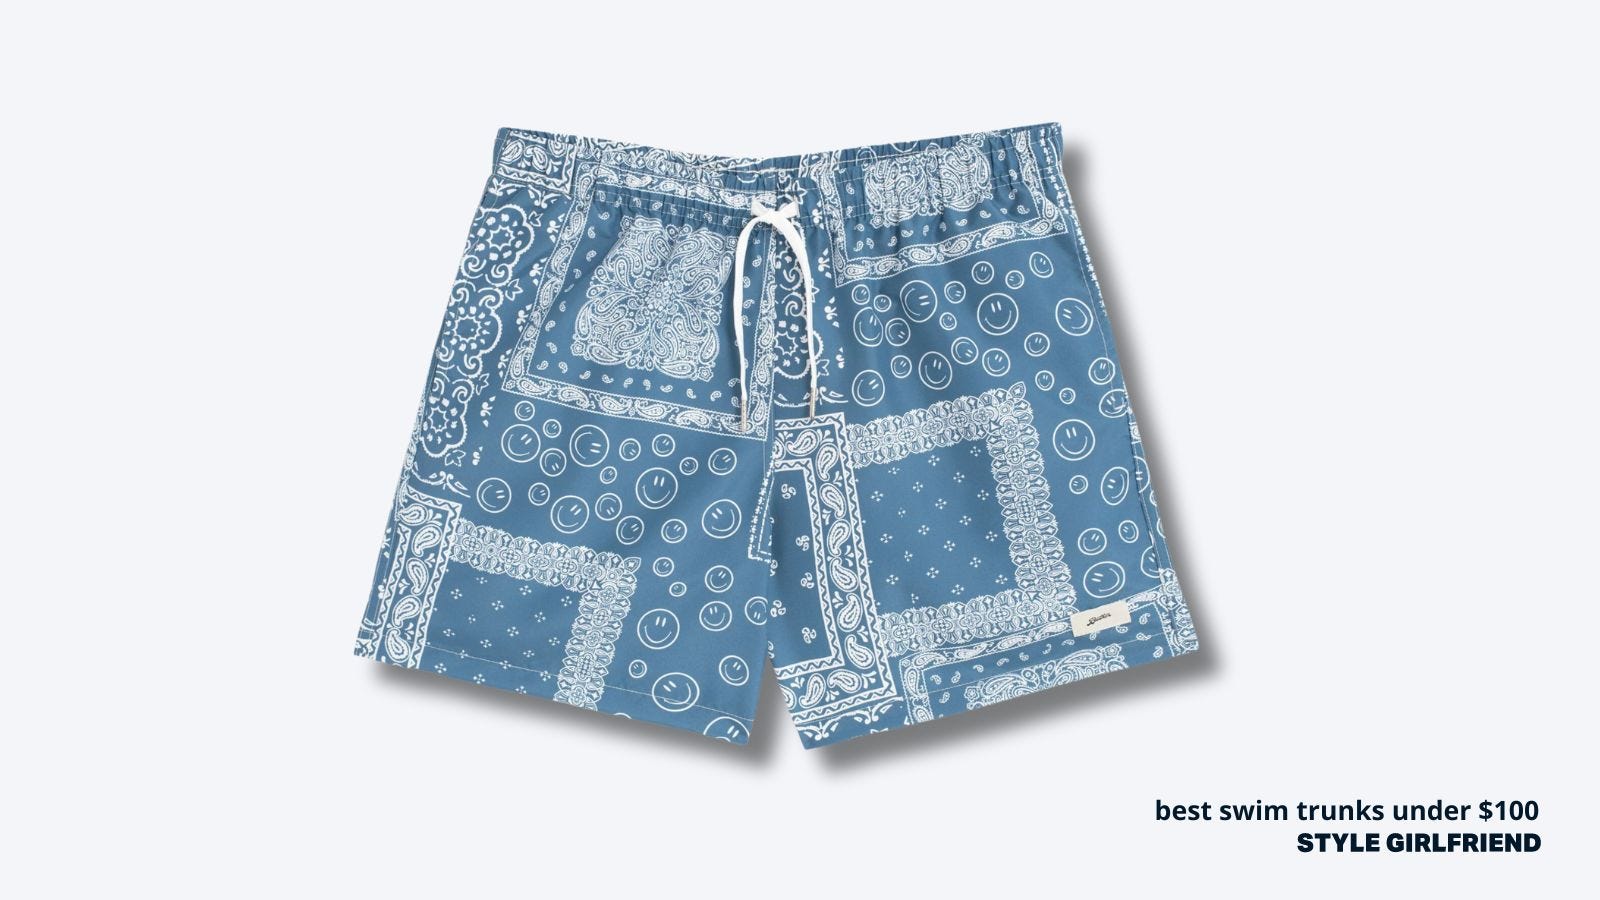 image of men's swim trunks in a light blue bandana pattern. text on-screen reads: best swim trunks under $100, style girlfriend